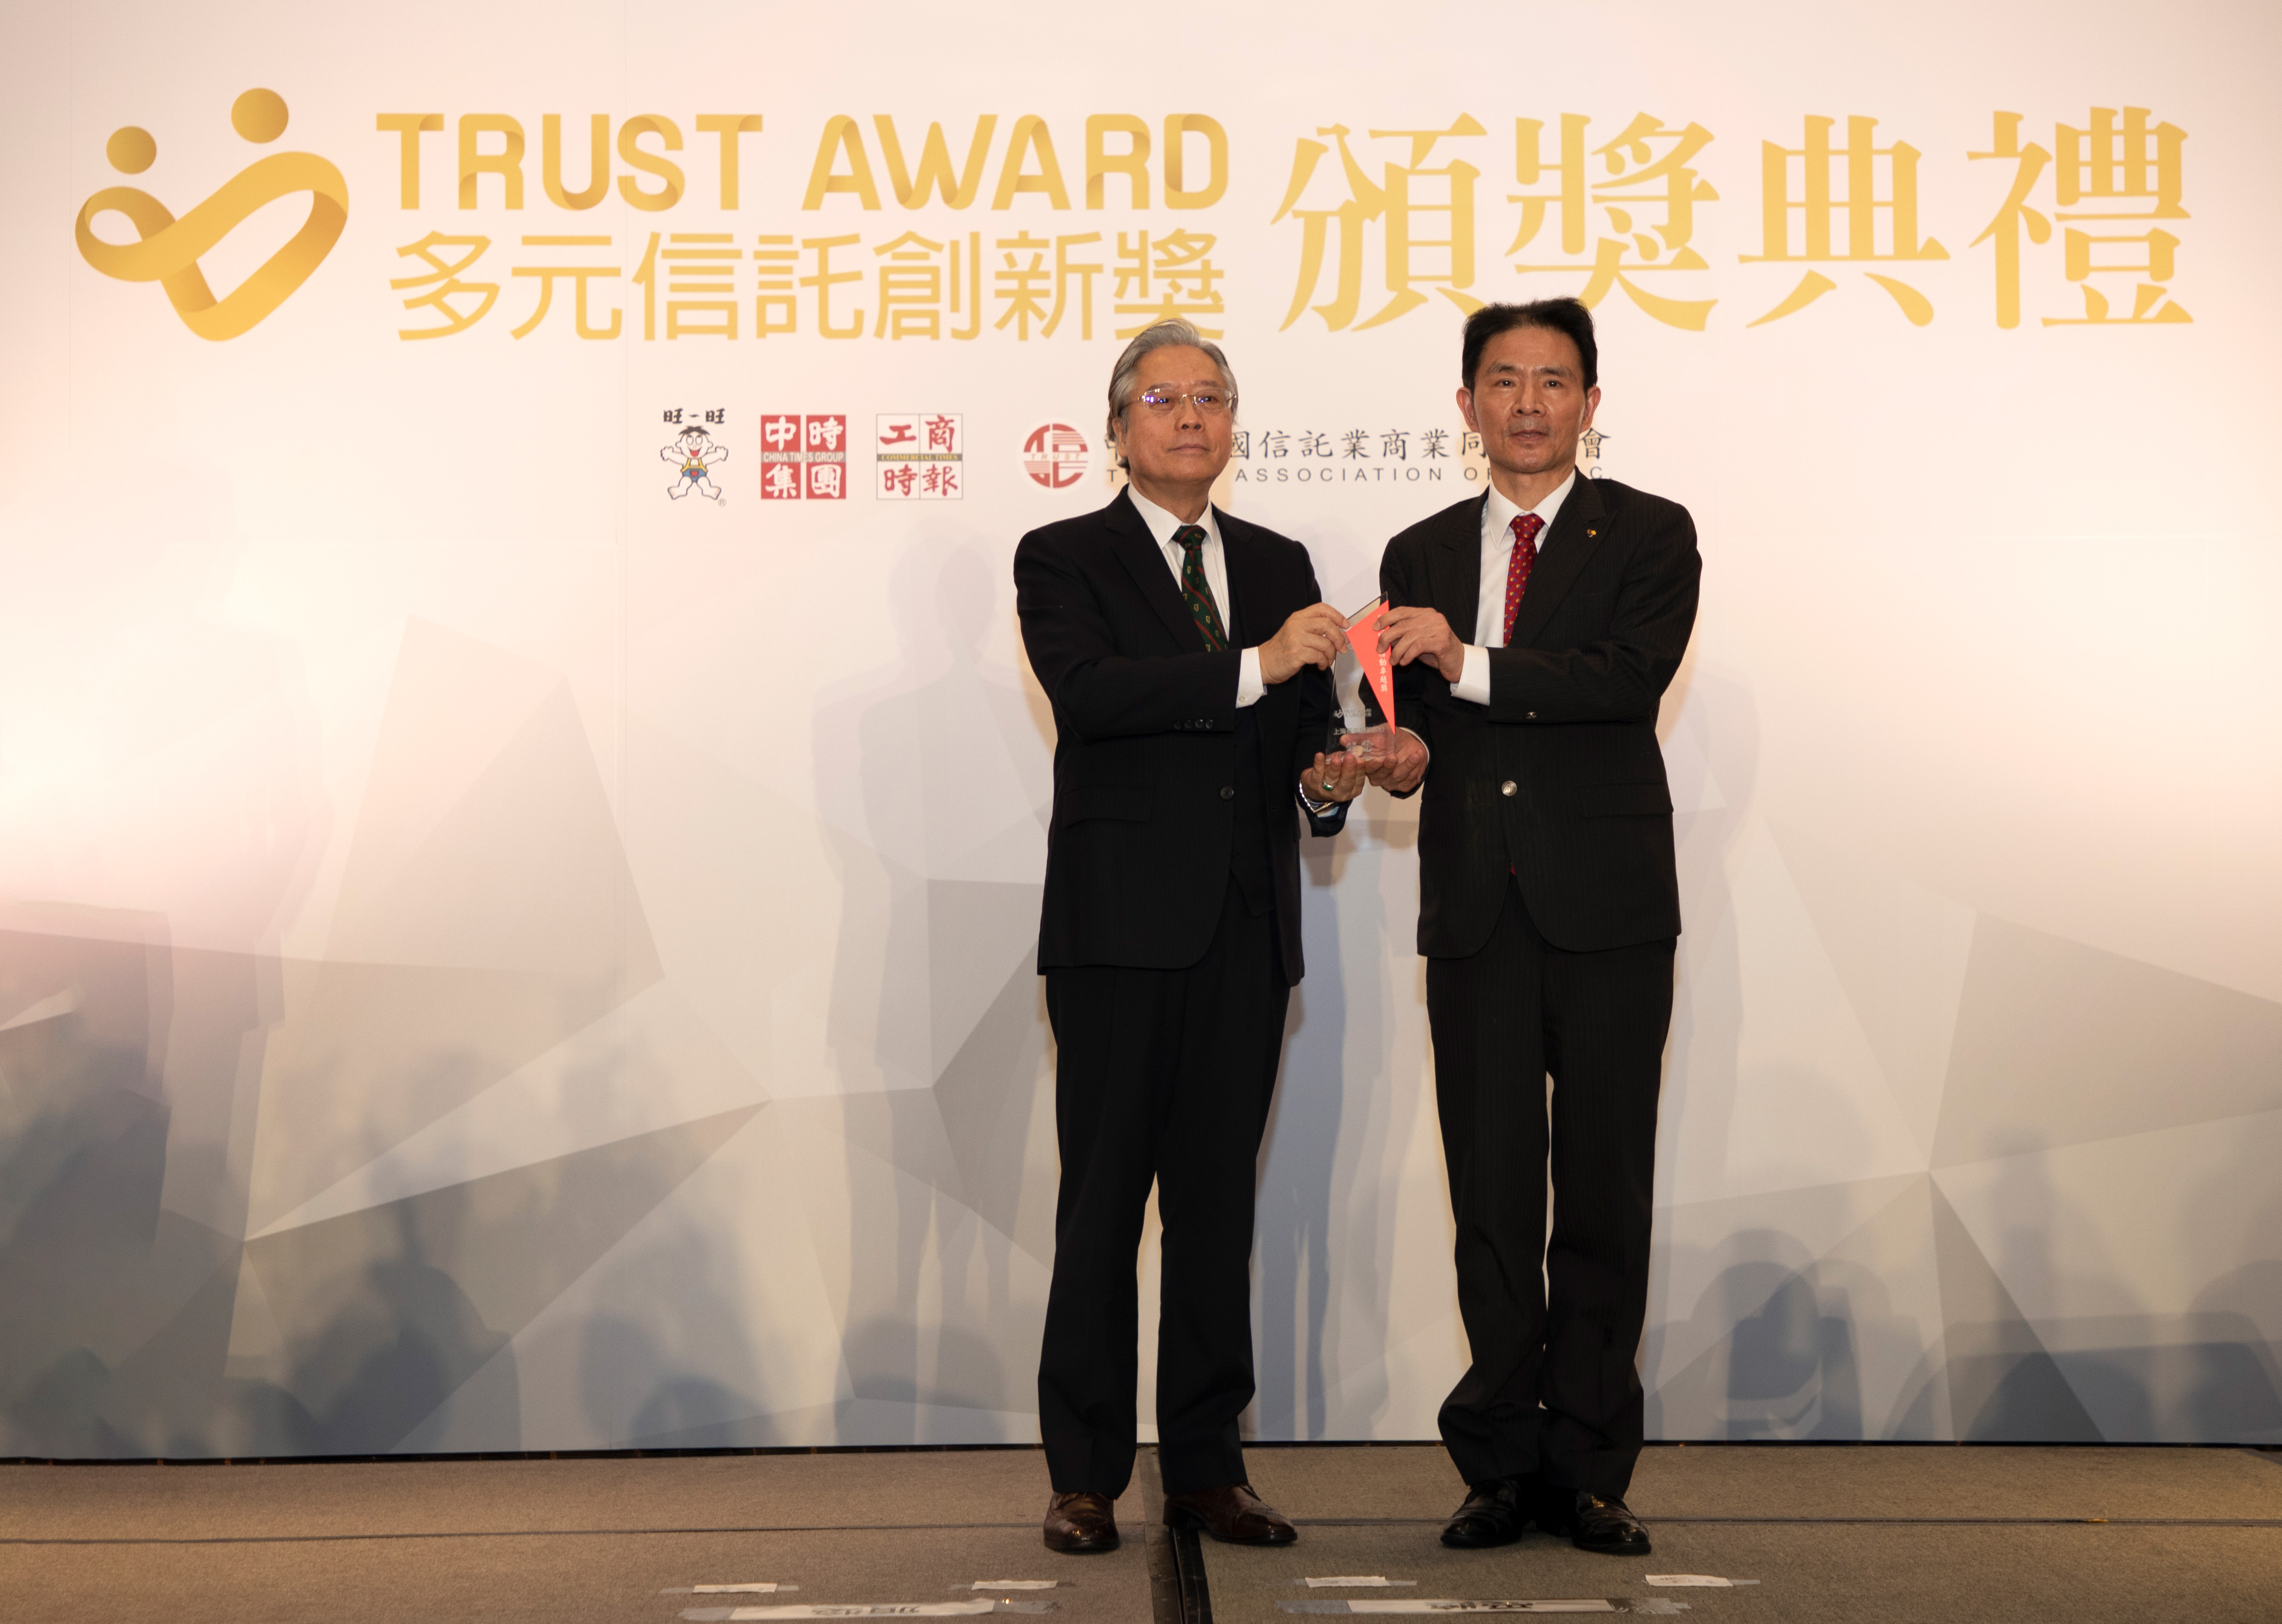 工商時報舉辦之「Trust Award 多元信託創新獎」，本行榮獲「不動產信託多元價值創新獎－優質獎」、「最佳信託推動卓越獎」二大項獎。